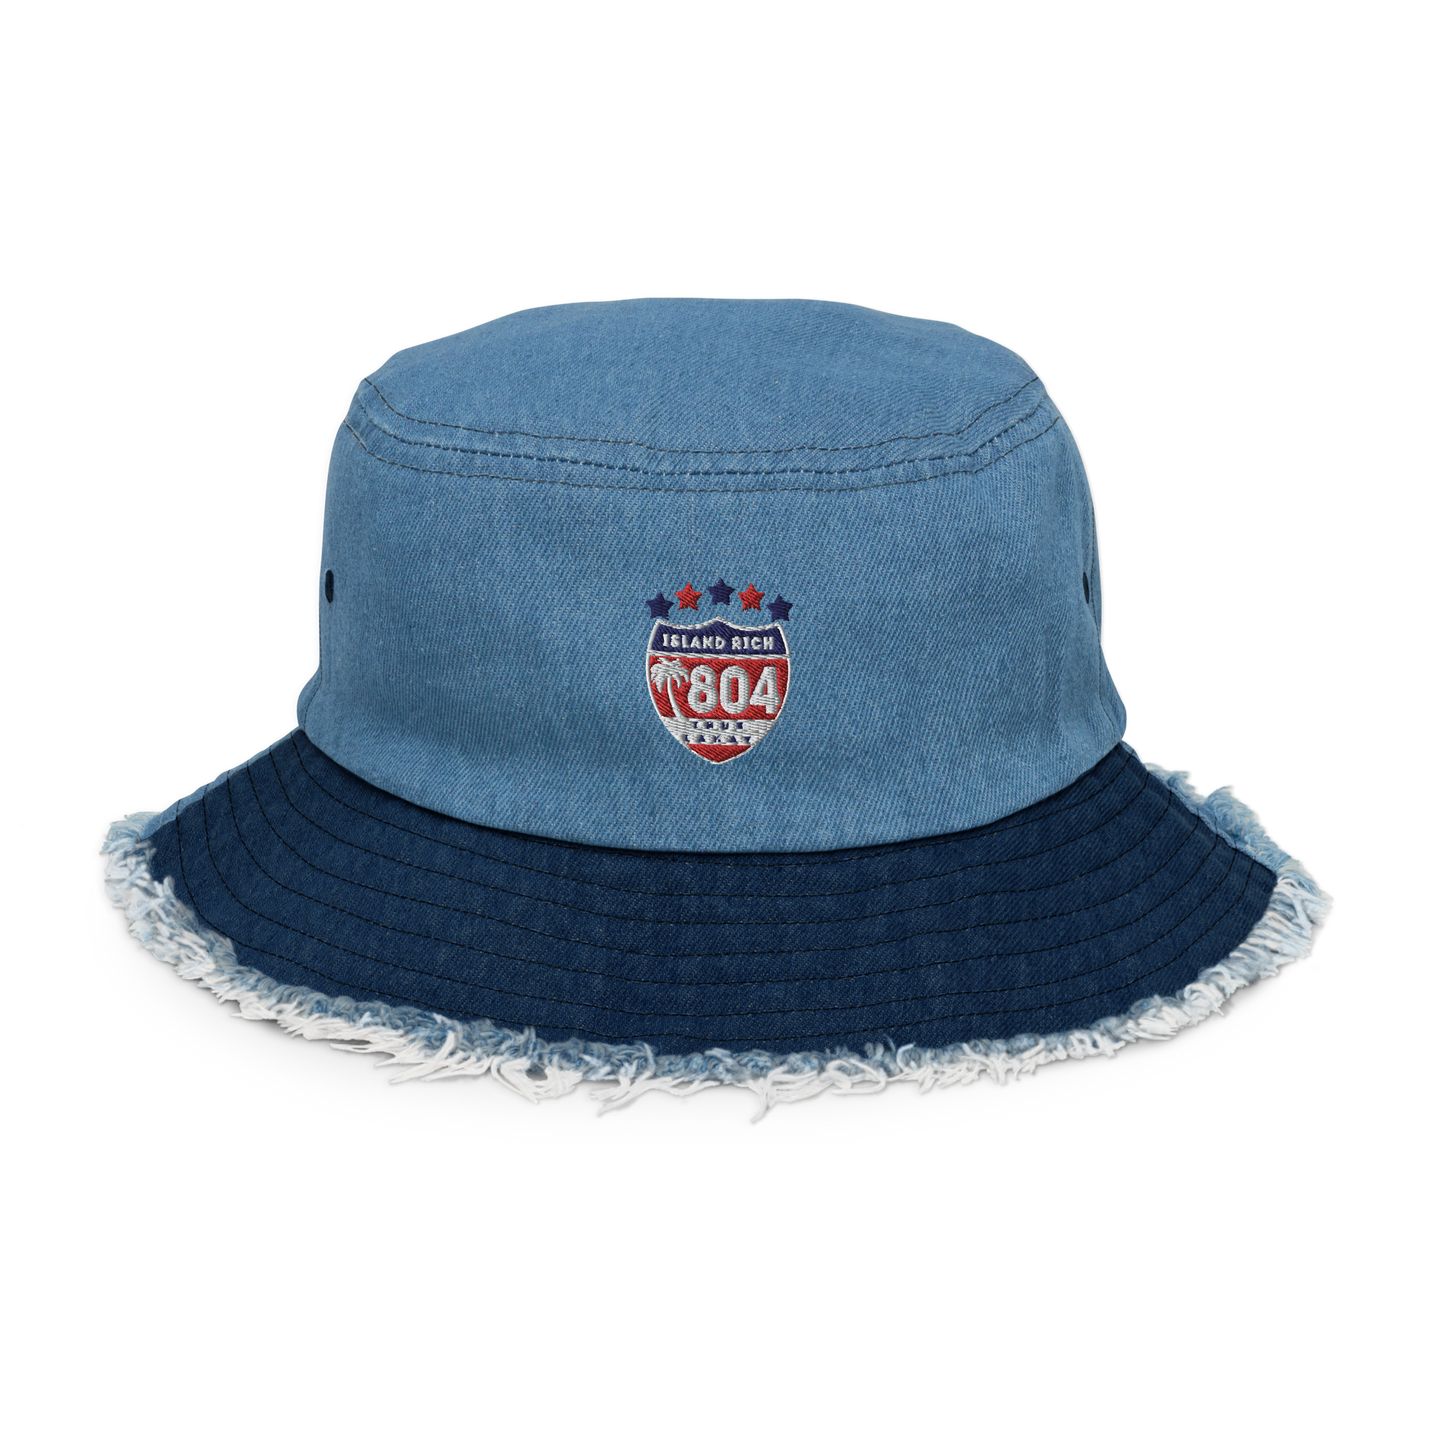 Distressed denim island Rich bucket hat